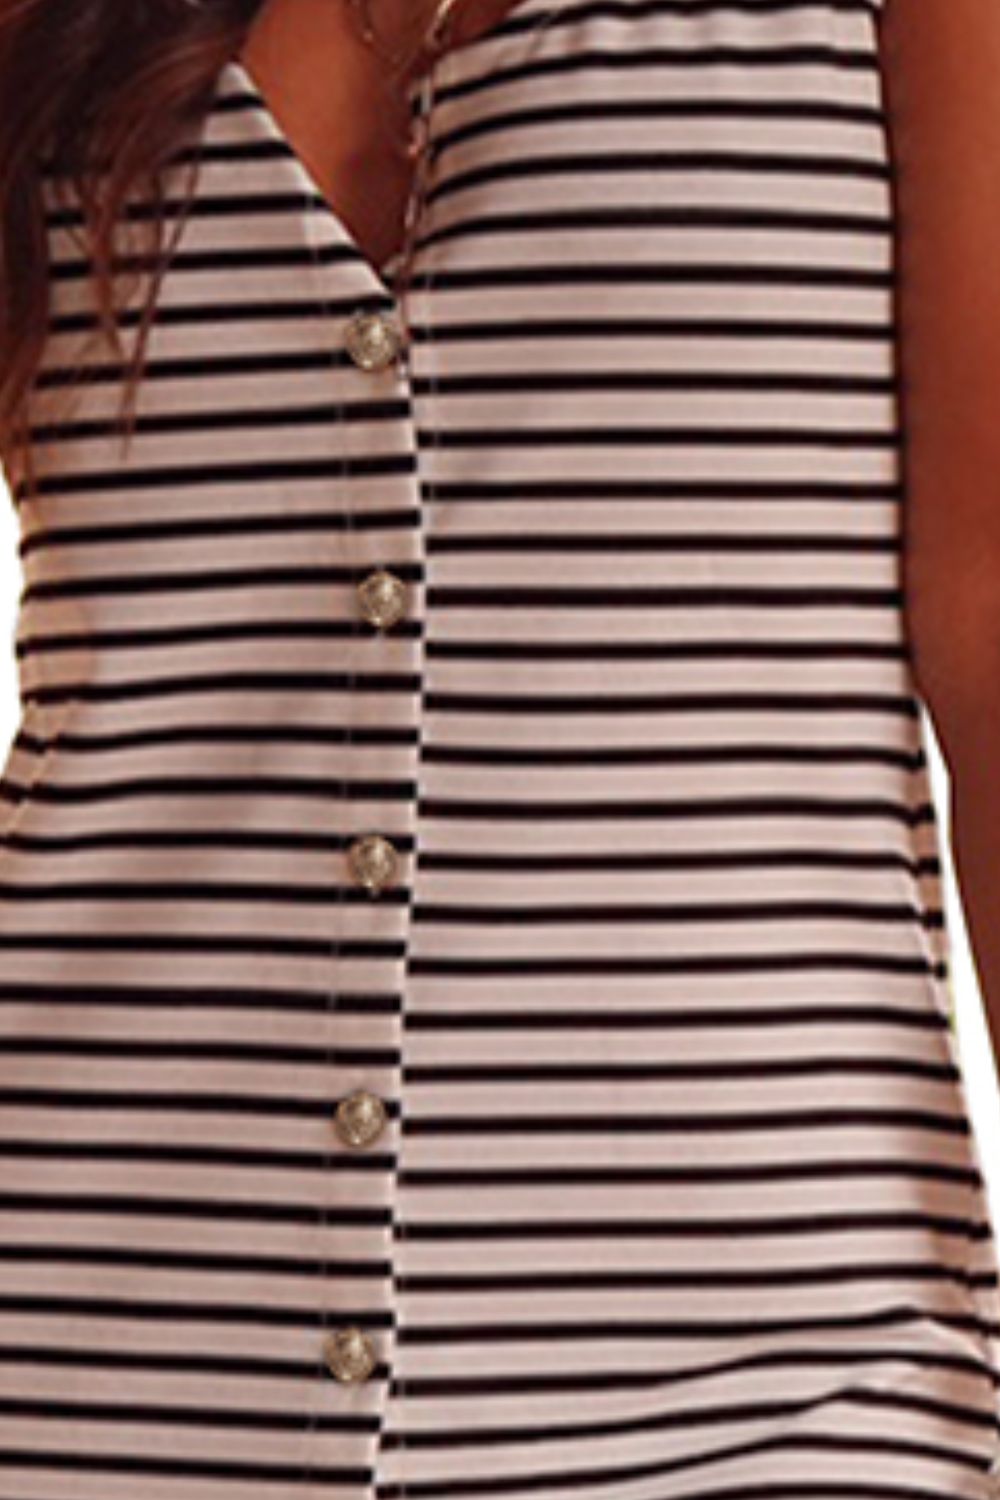 TEEK - Retro Striped Wide Strap Midi Dress DRESS TEEK Trend   